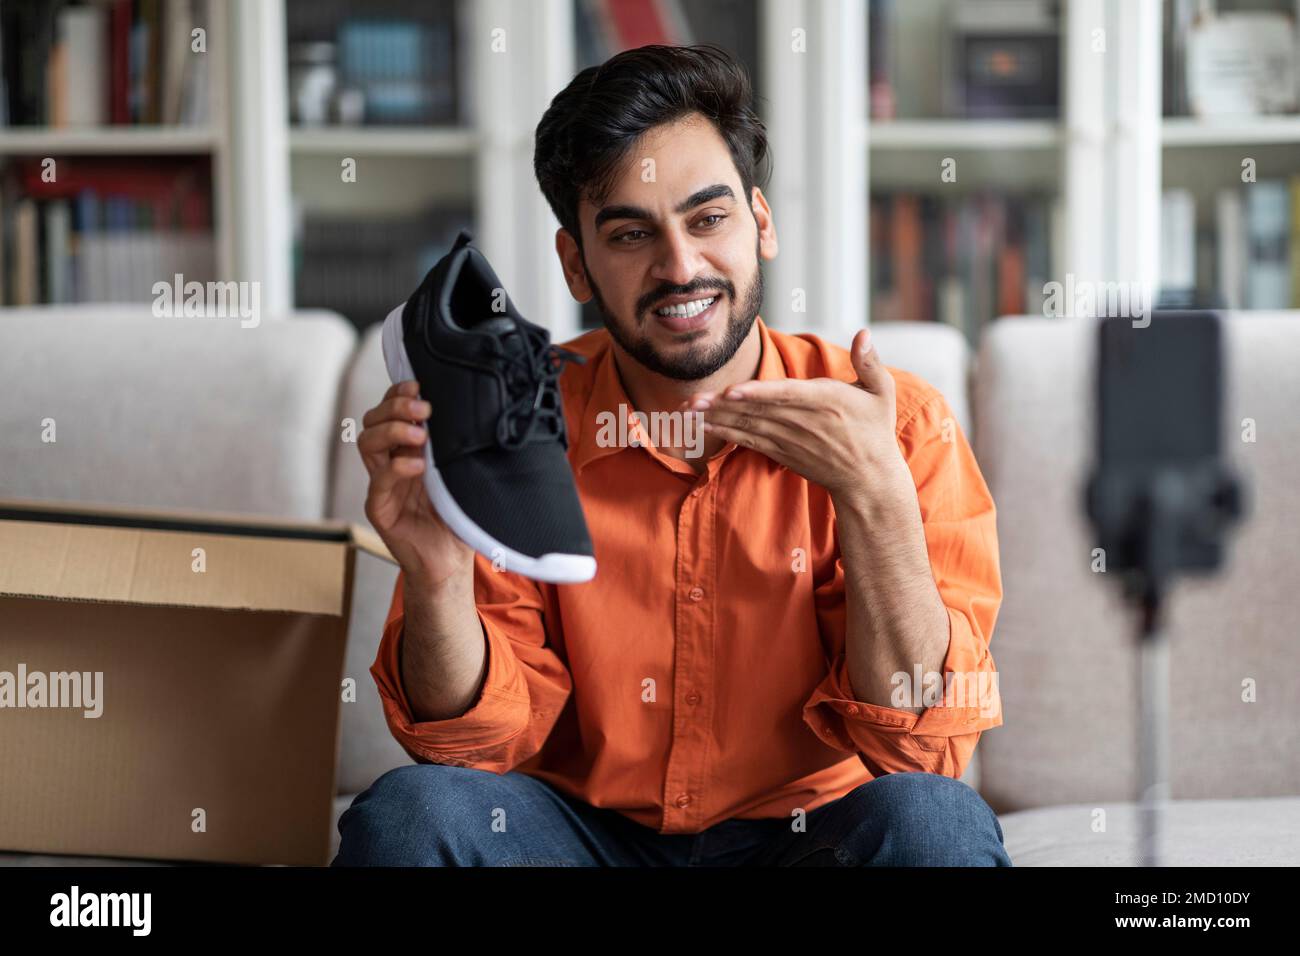 Beau blogueur de mode de type arabe montrant de nouvelles chaussures Banque D'Images